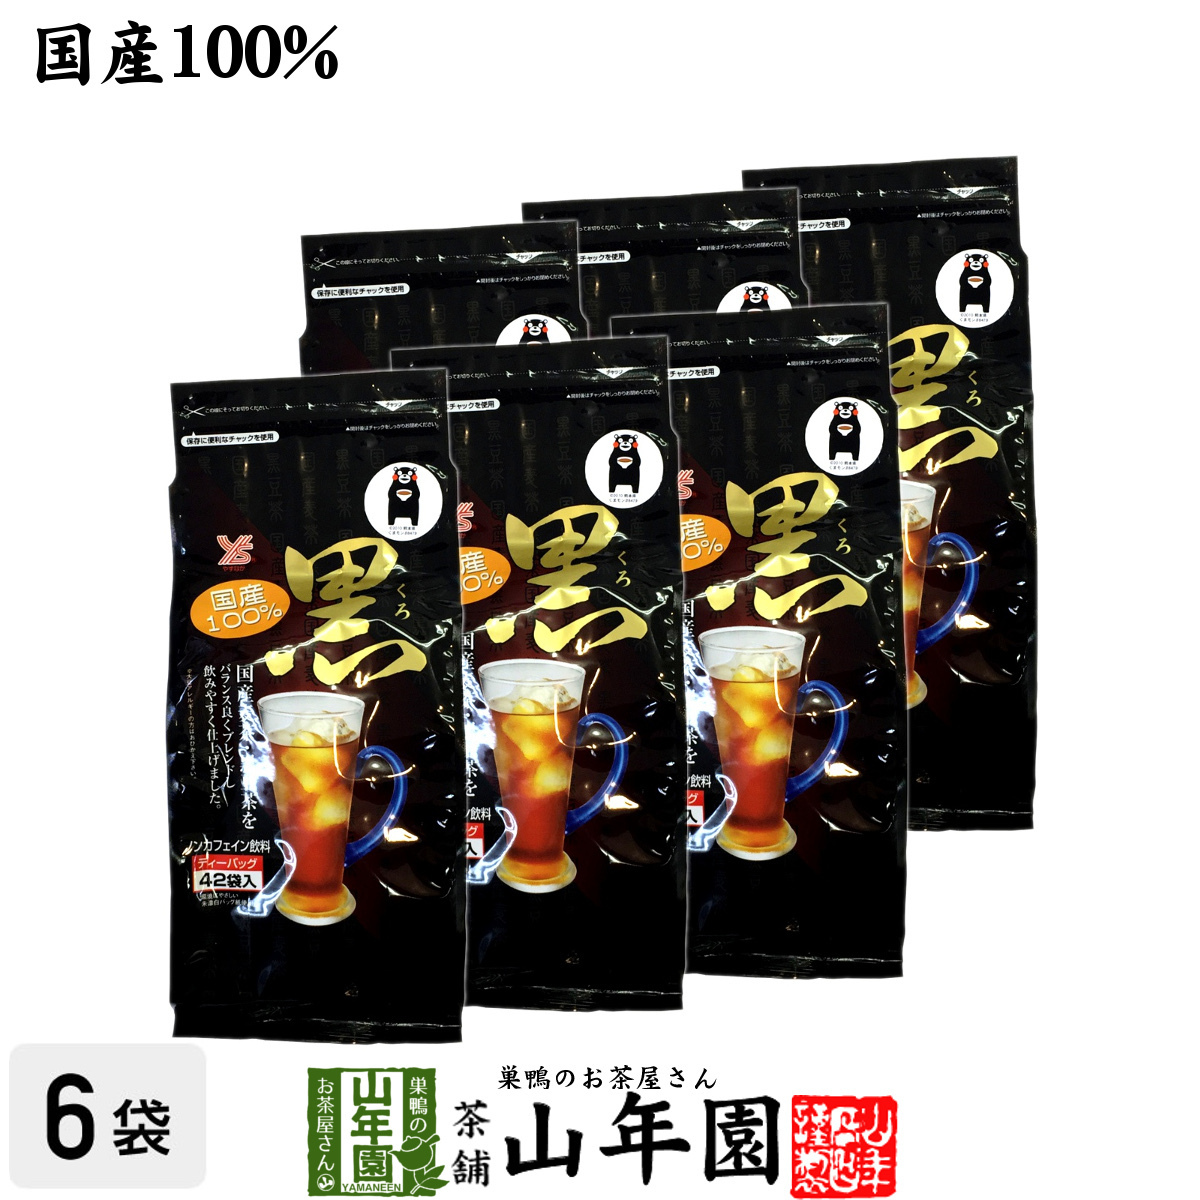 健康茶 黒豆麦茶 ティーパック 10g×42パック×6袋セット(2520g) 国産大容量 ダイエット ティーバッグ 送料無料